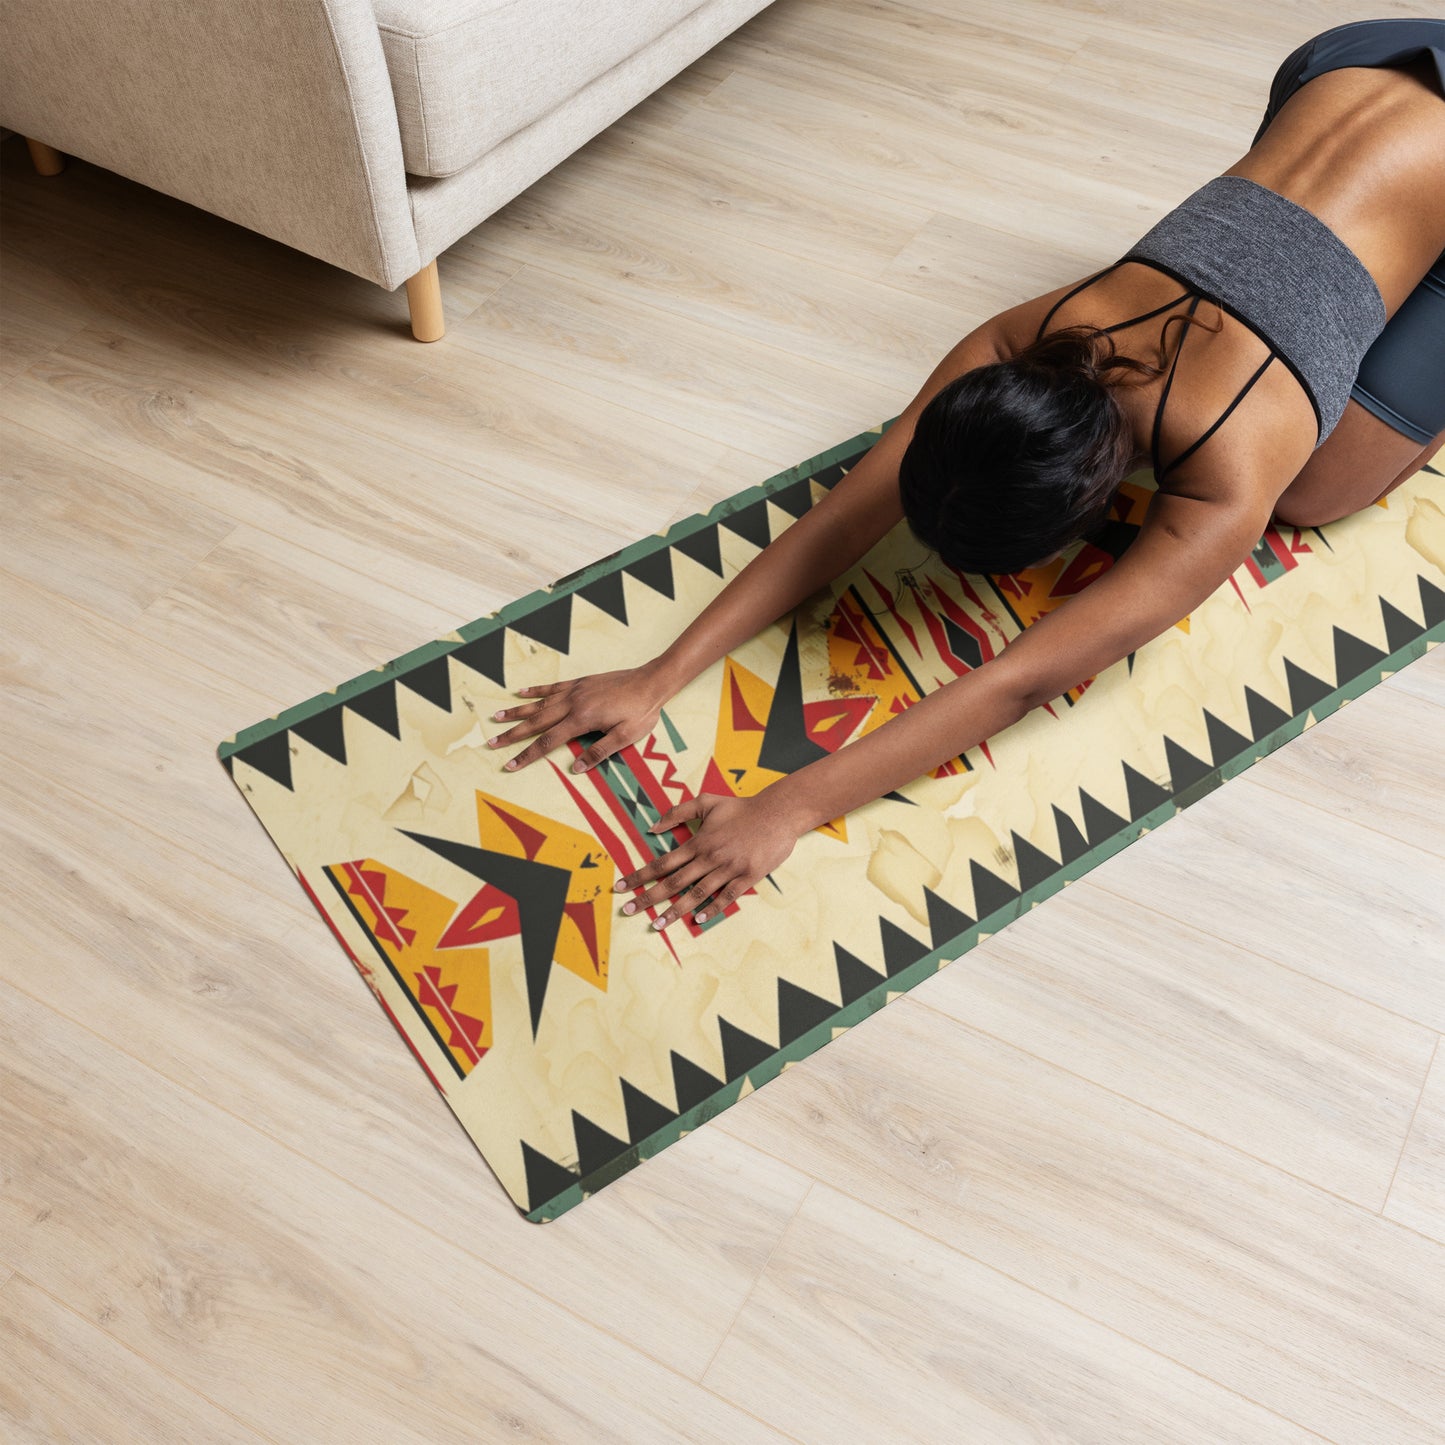 AP 1 Yoga mat